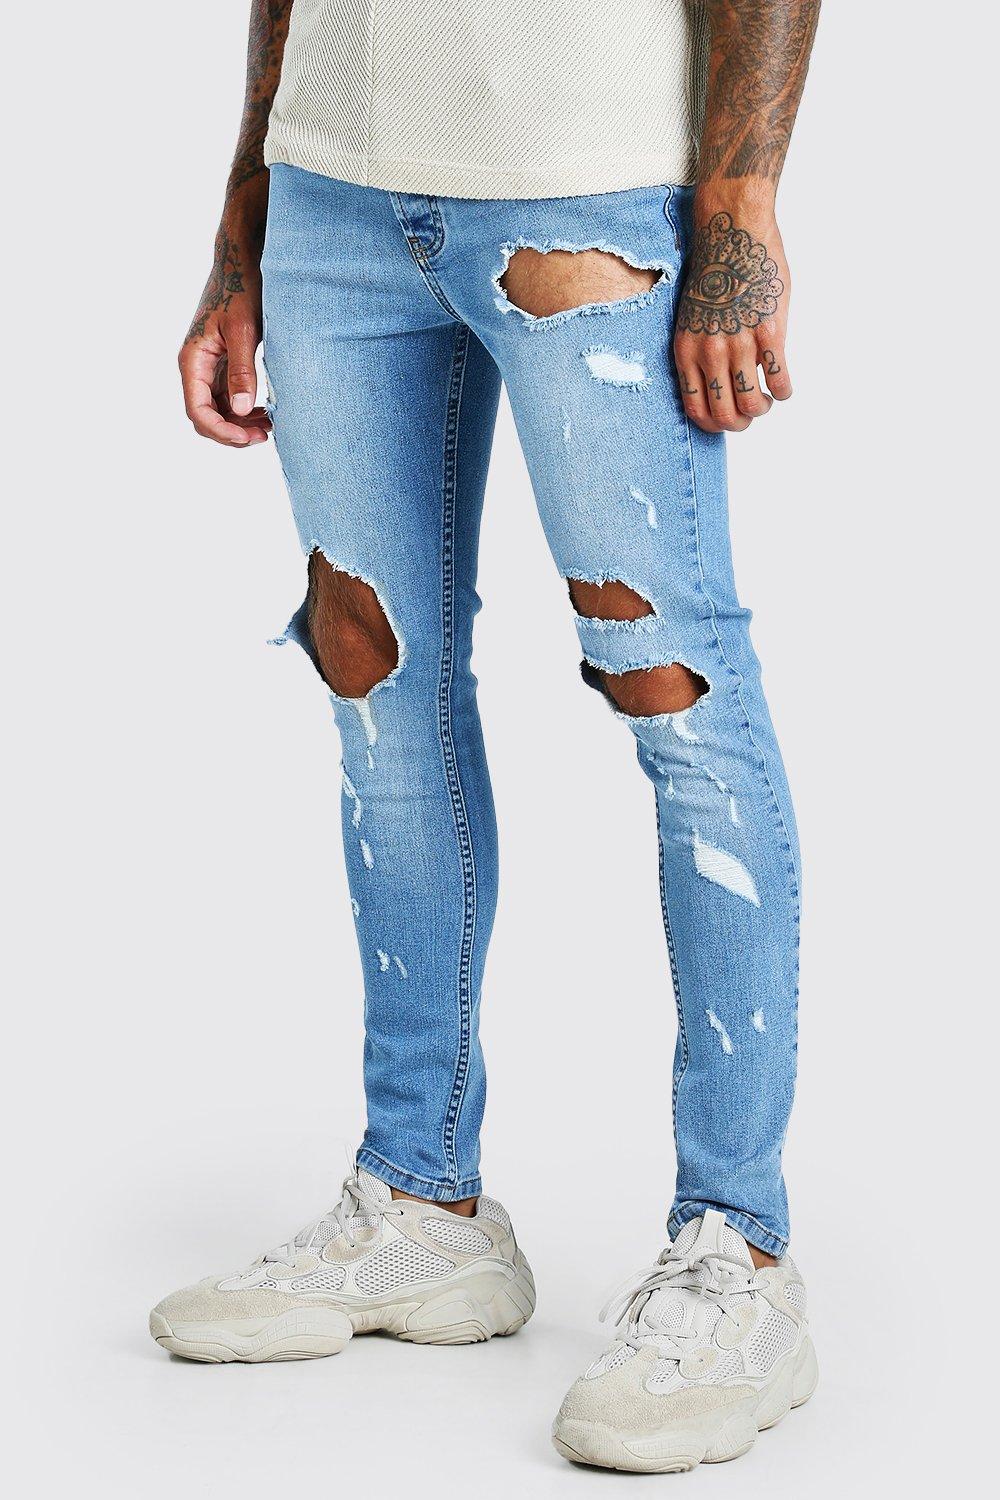 jack and jones jeans amazon